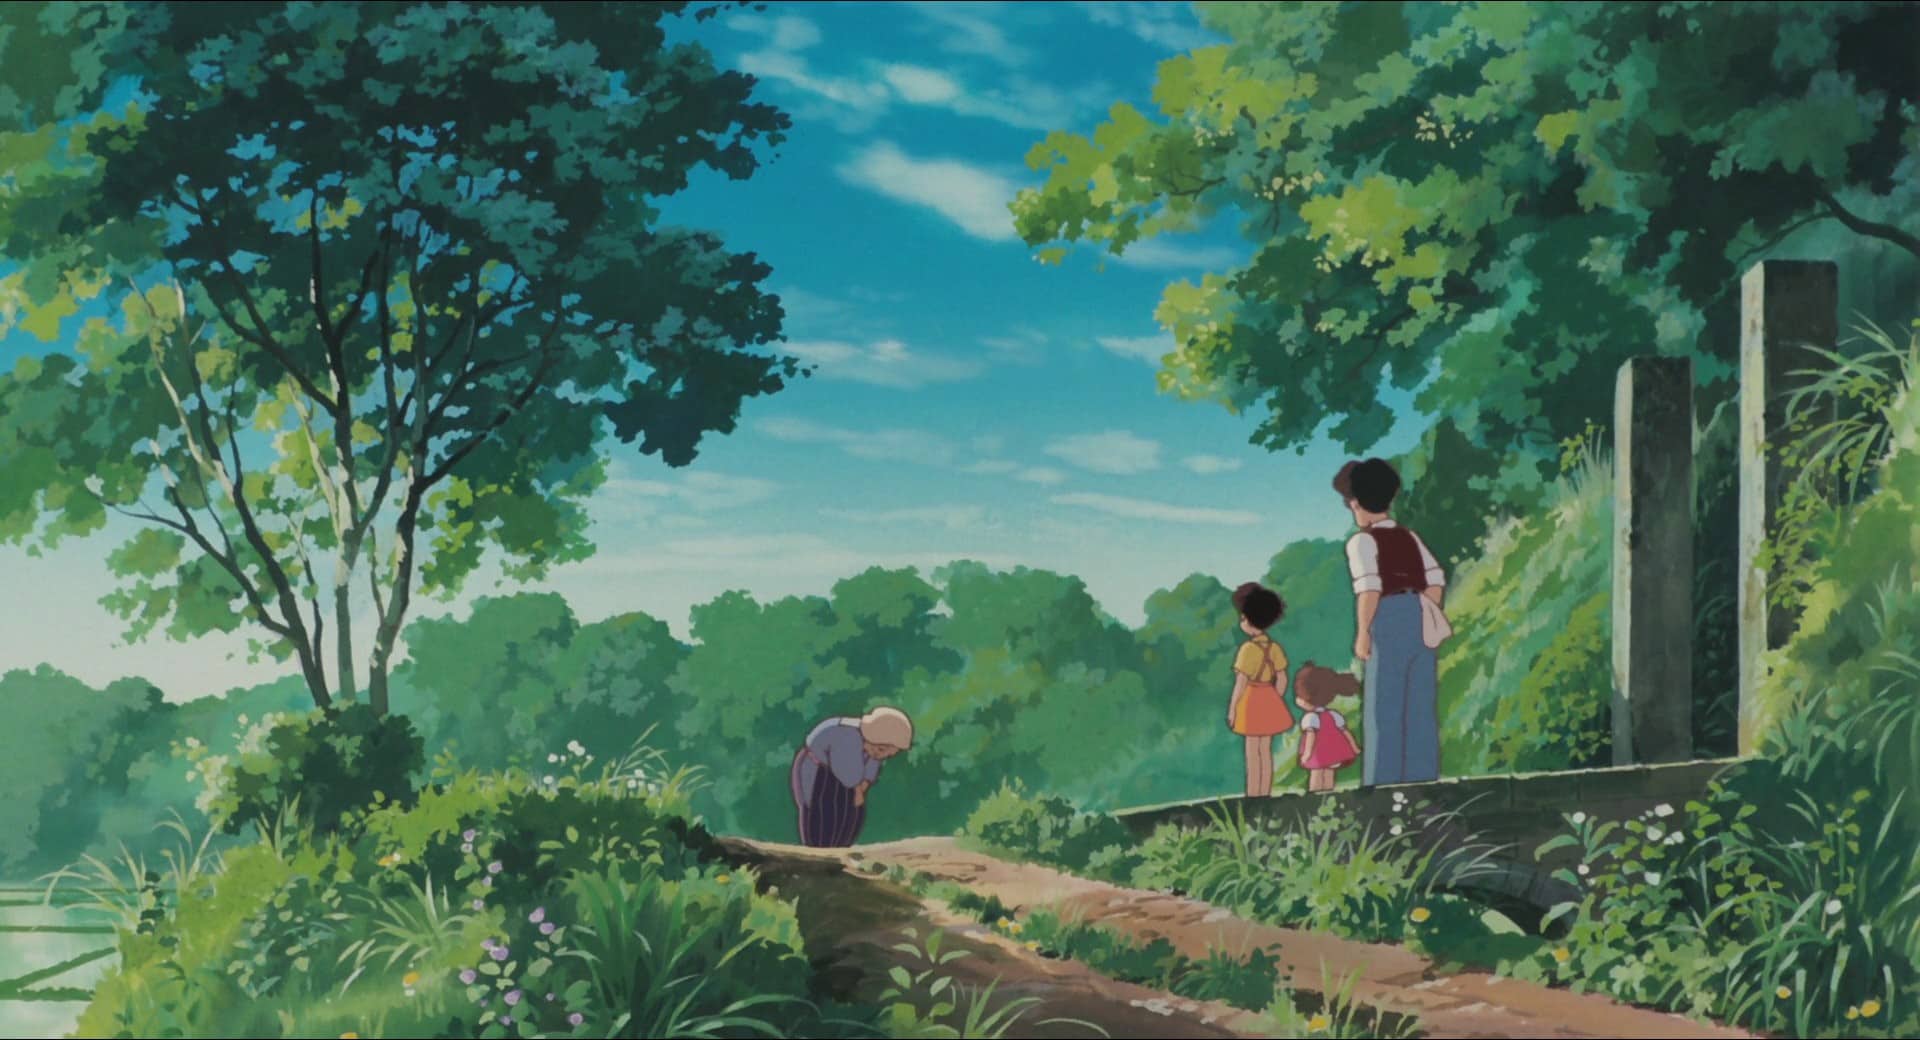 Fragmento fotograma de Totoro película de animación de Studio Ghibli. Paisajes de estilo manga.